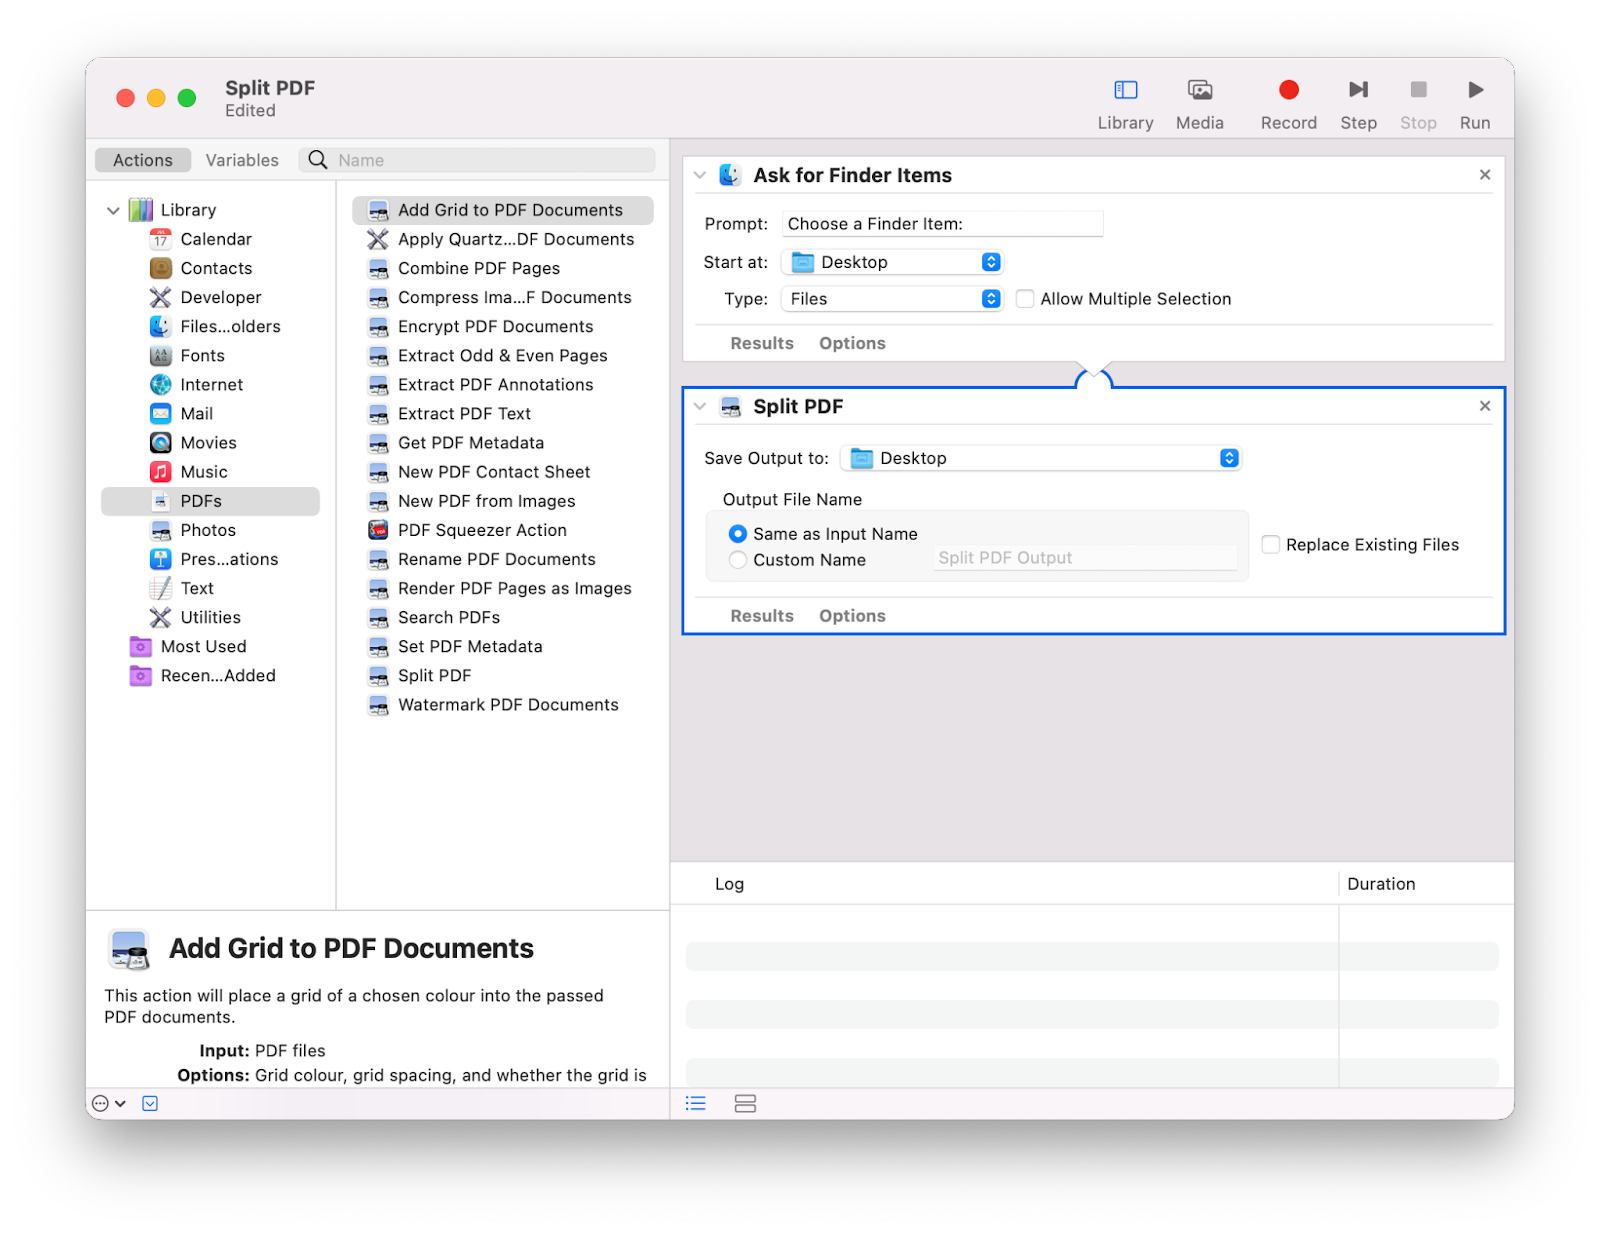 How to split PDF on Mac